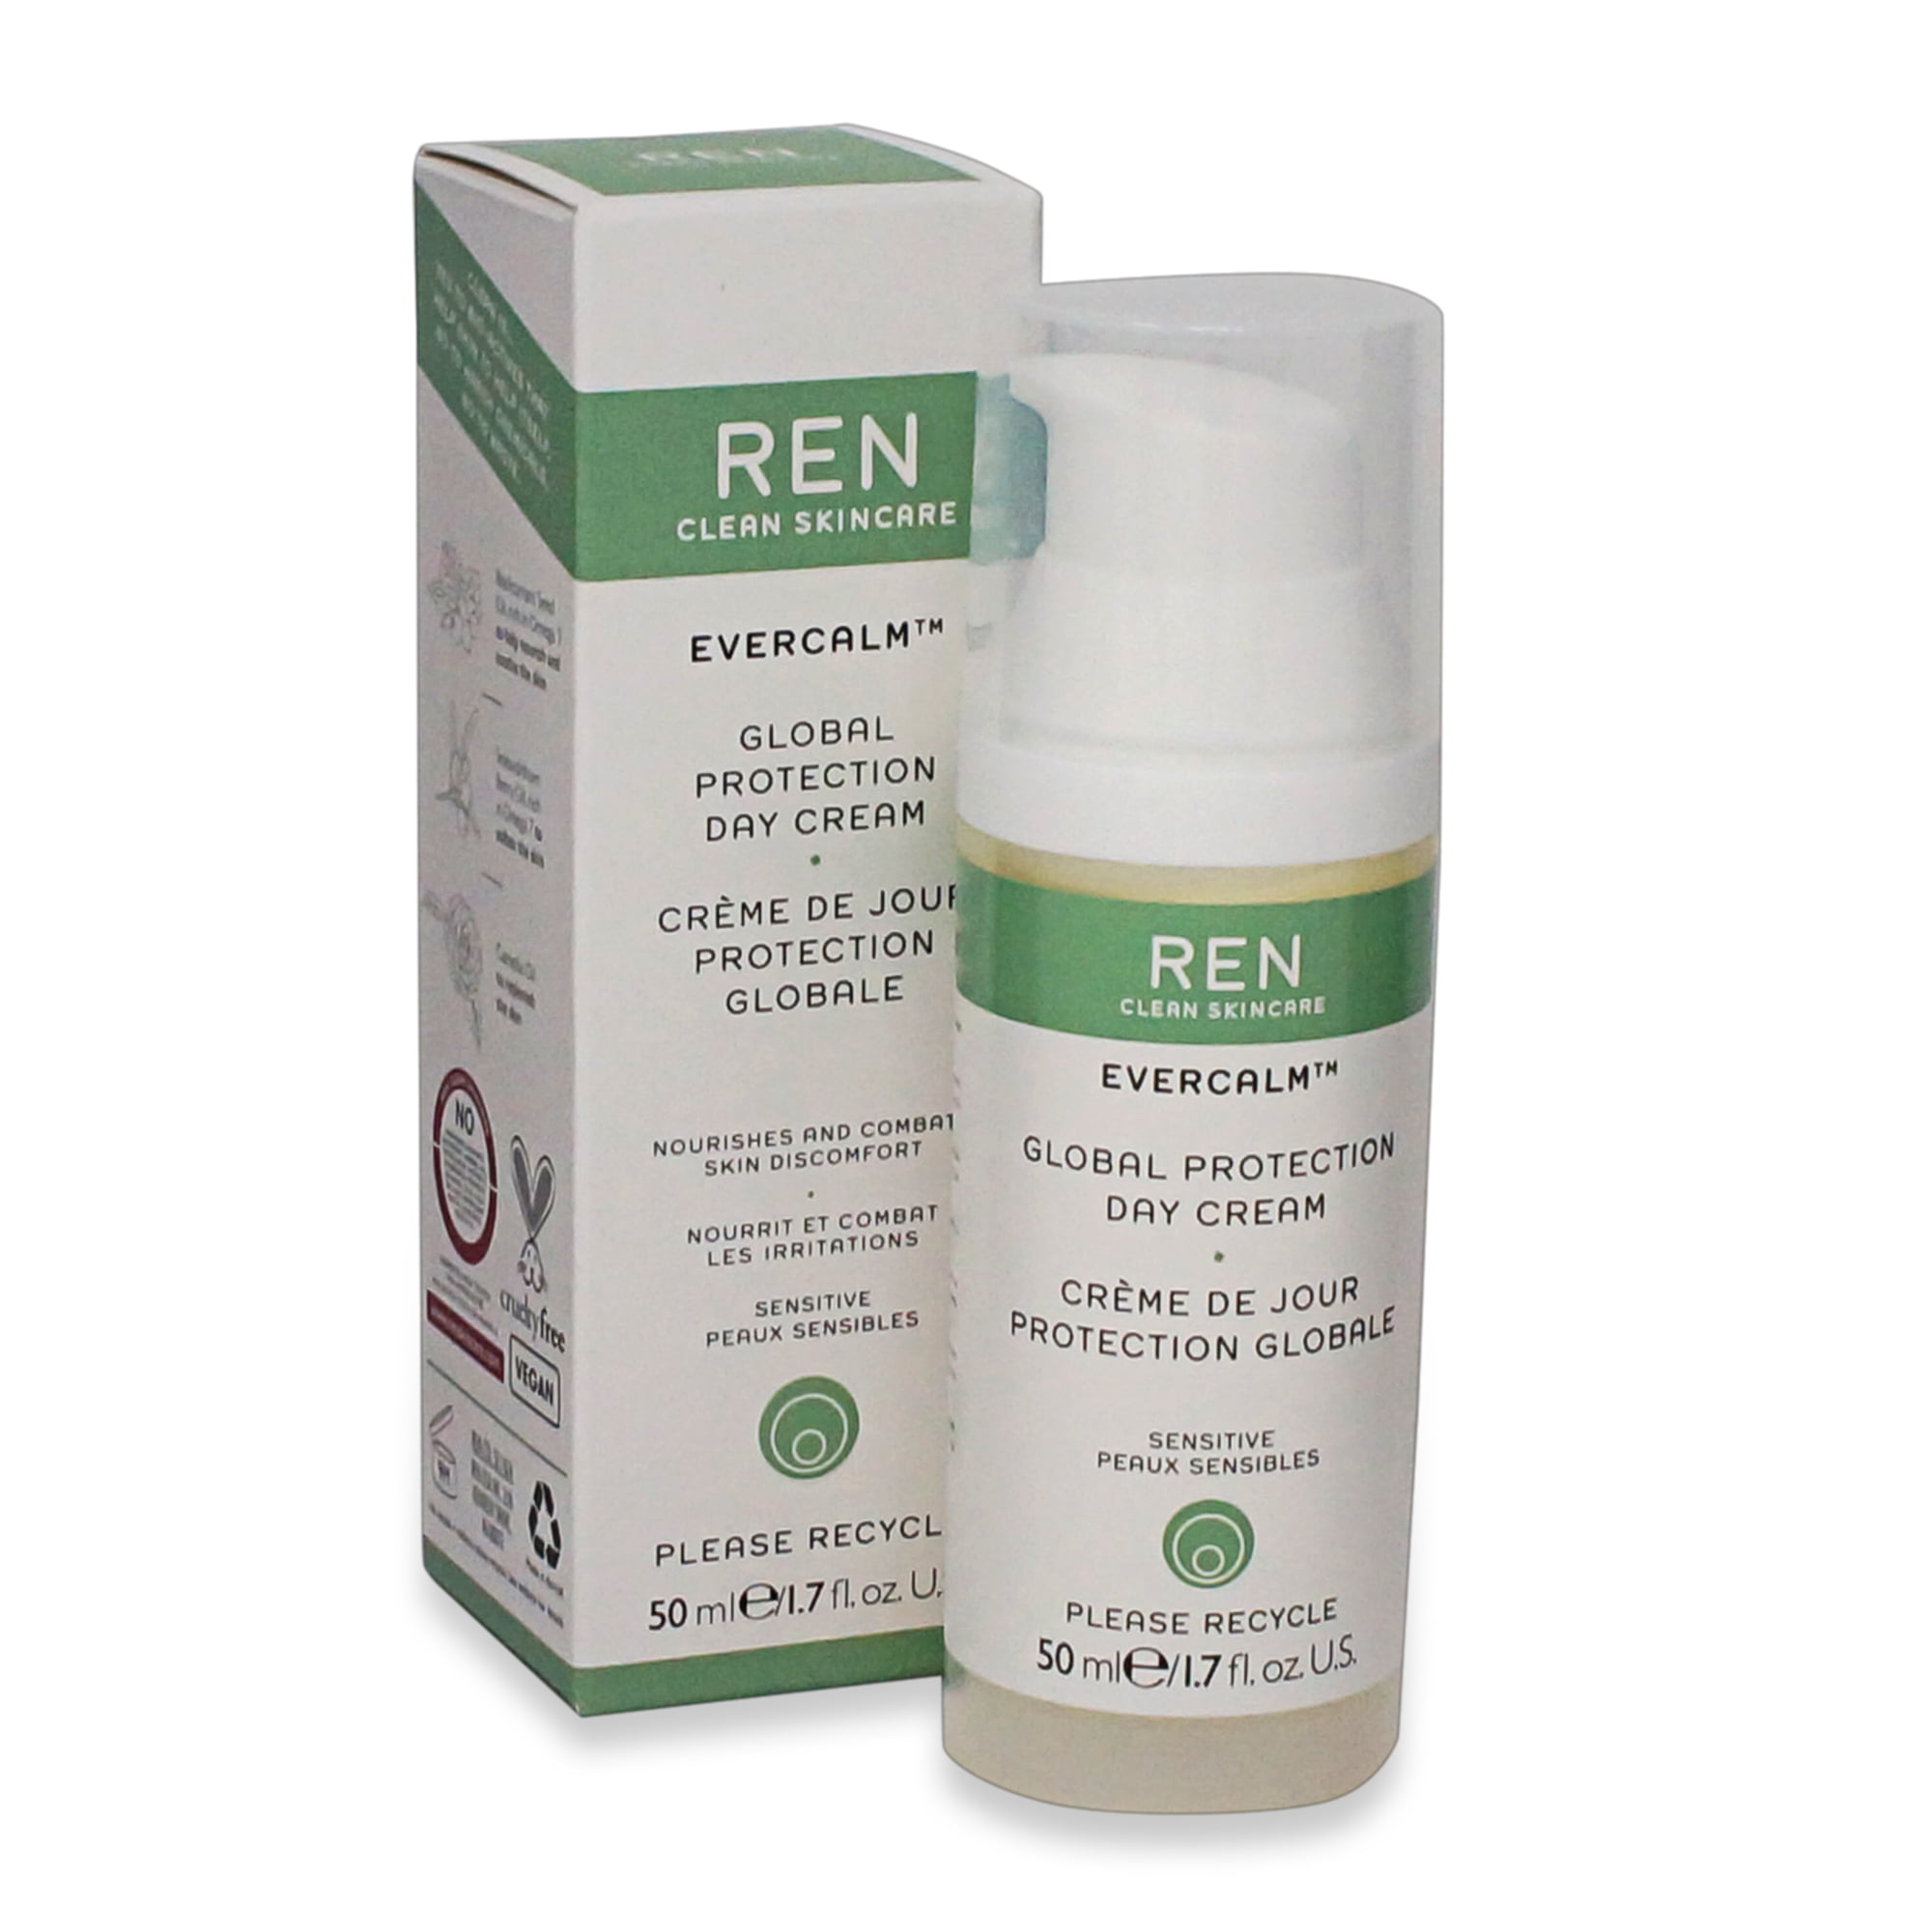 Ren skin care